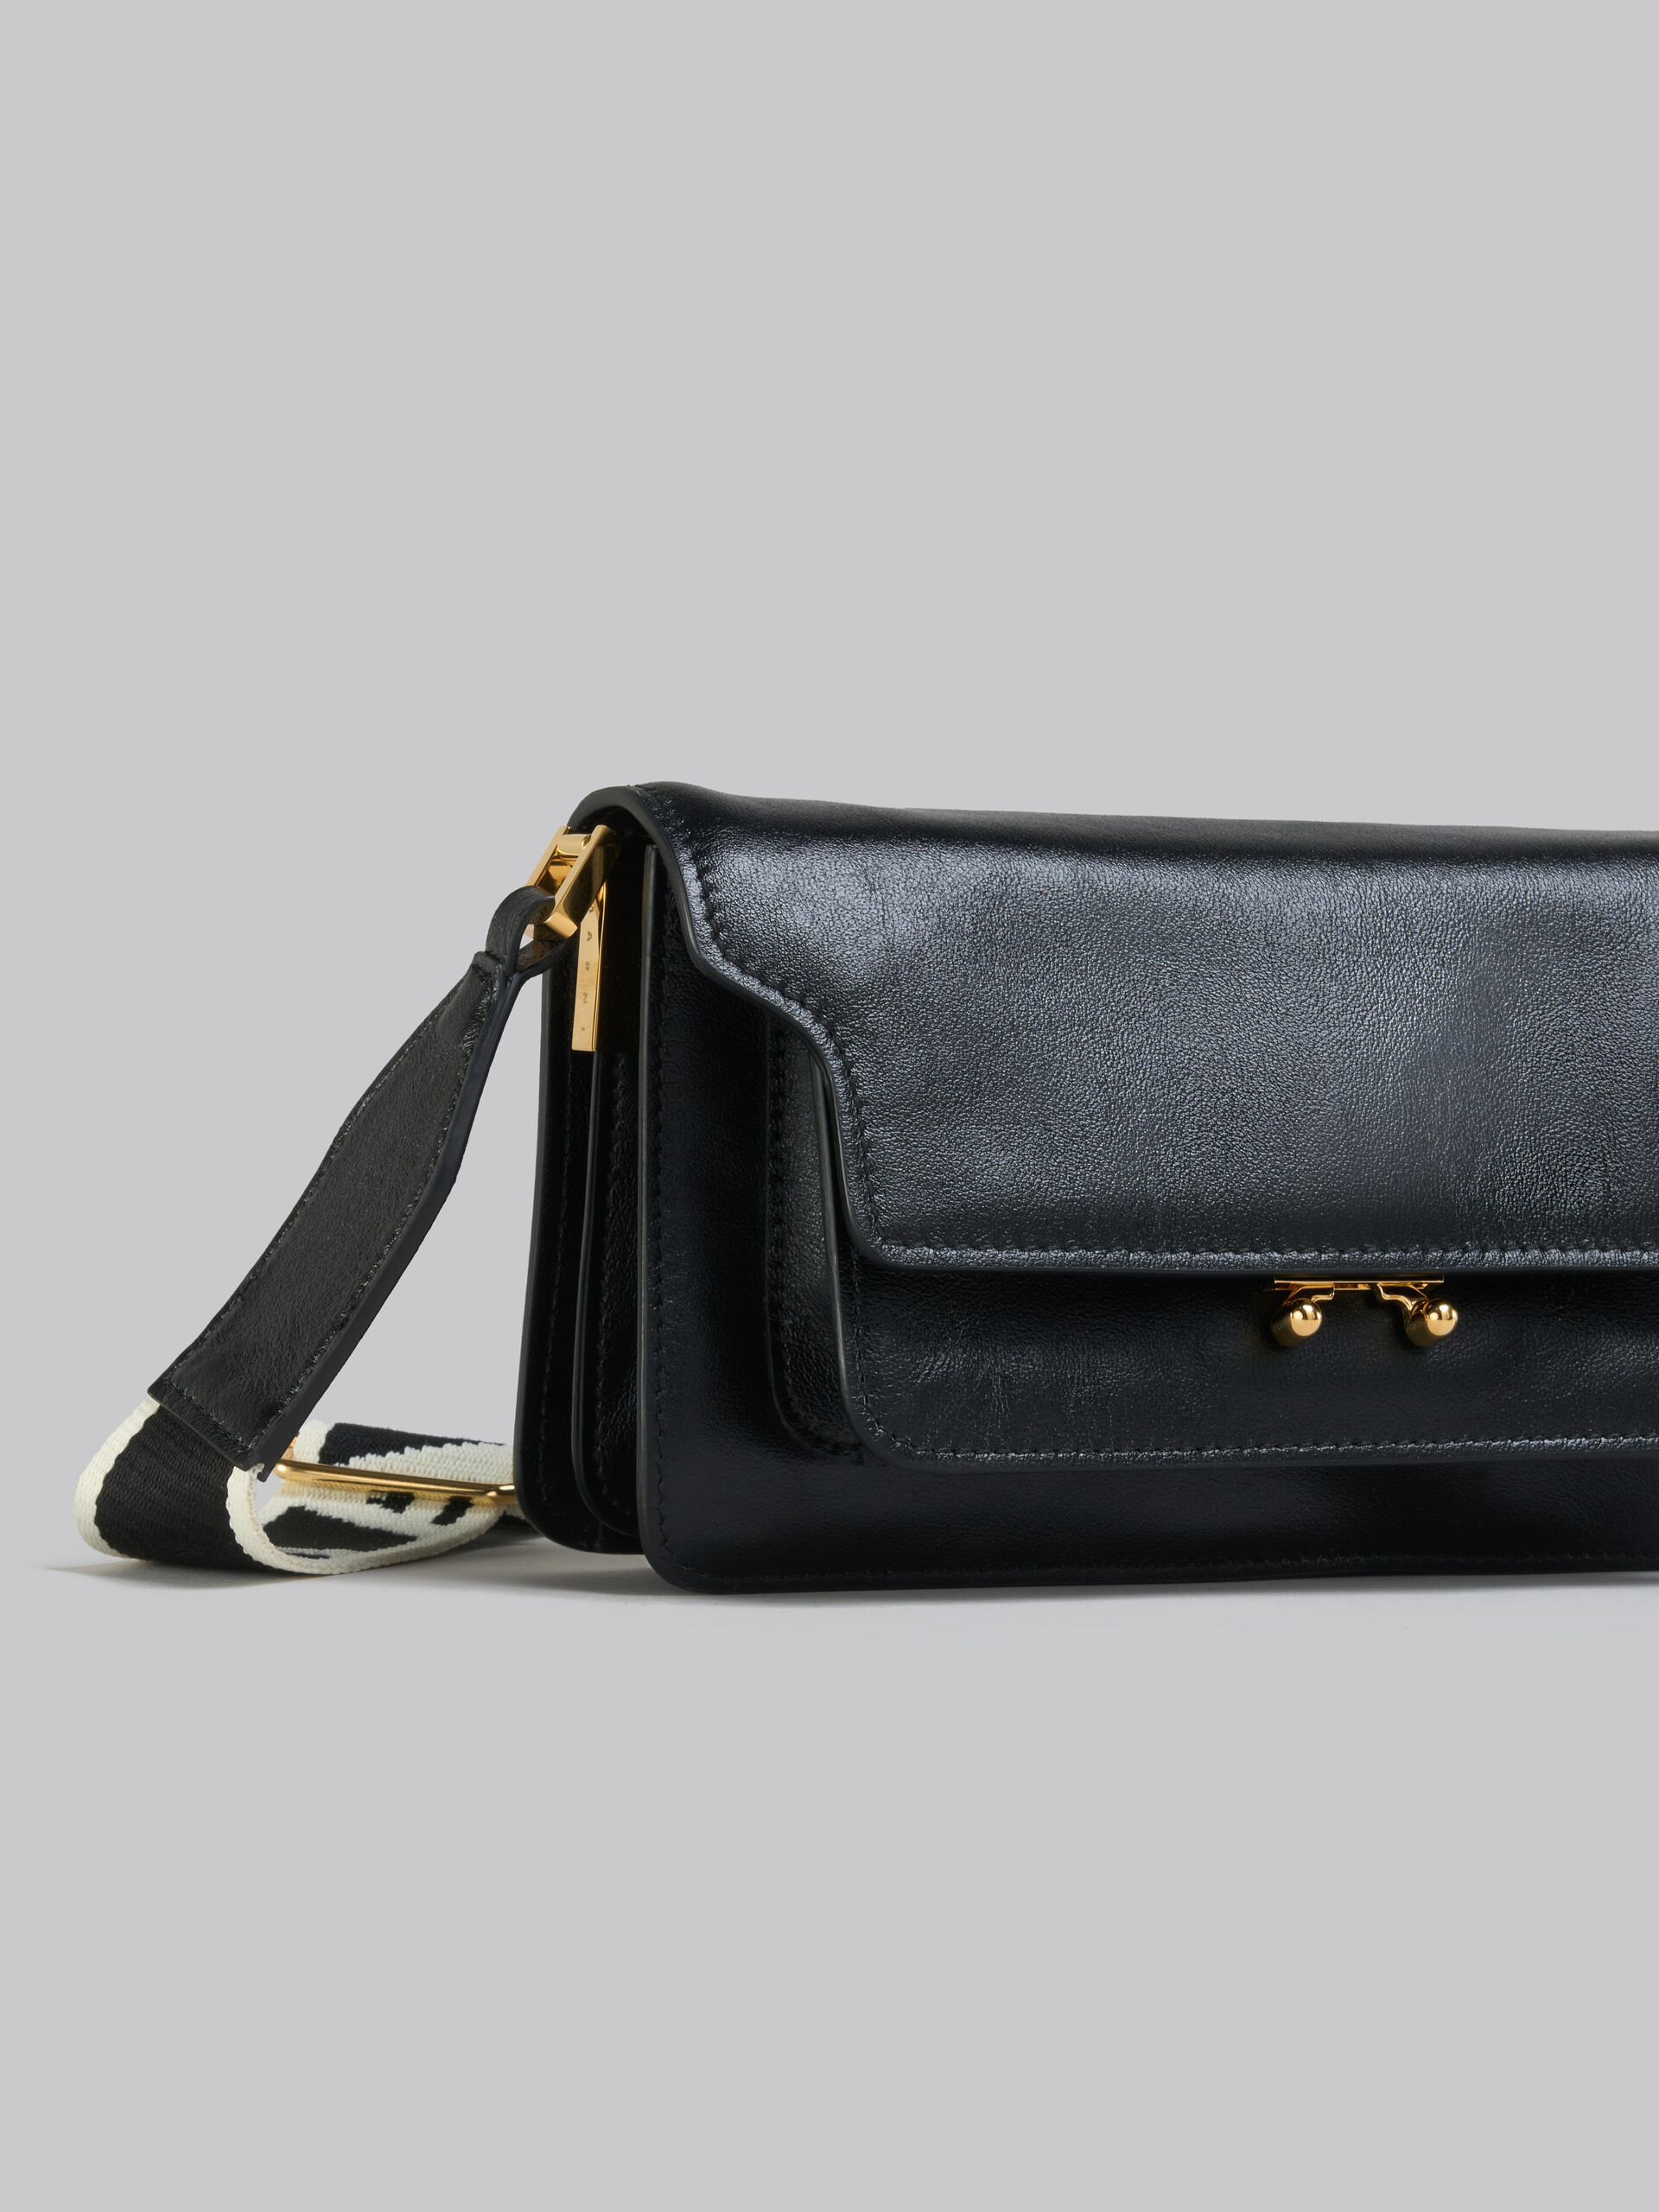 Trunk Soft Bag E/W in pelle marrone con tracolla logata - Borse a spalla - Image 5